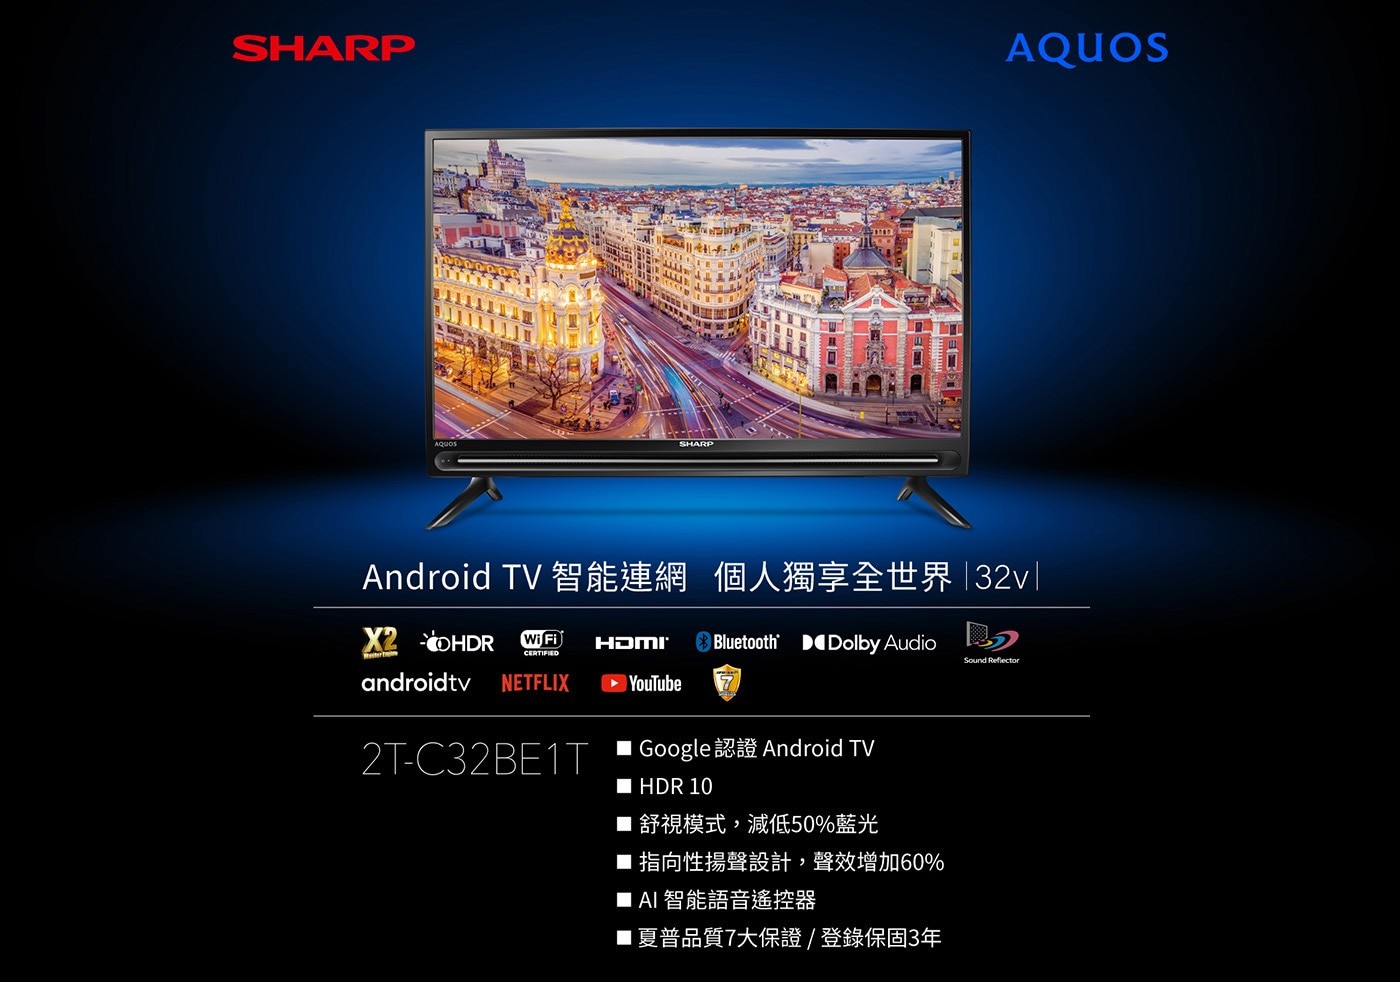 夏普 32吋 HD 智慧連網液晶顯示器 2T-C32BE1T 5台Google認證安卓TV舒視模式減低50%藍光HDR10指向性揚聲設計聲效增加60%AI智能語音遙控器